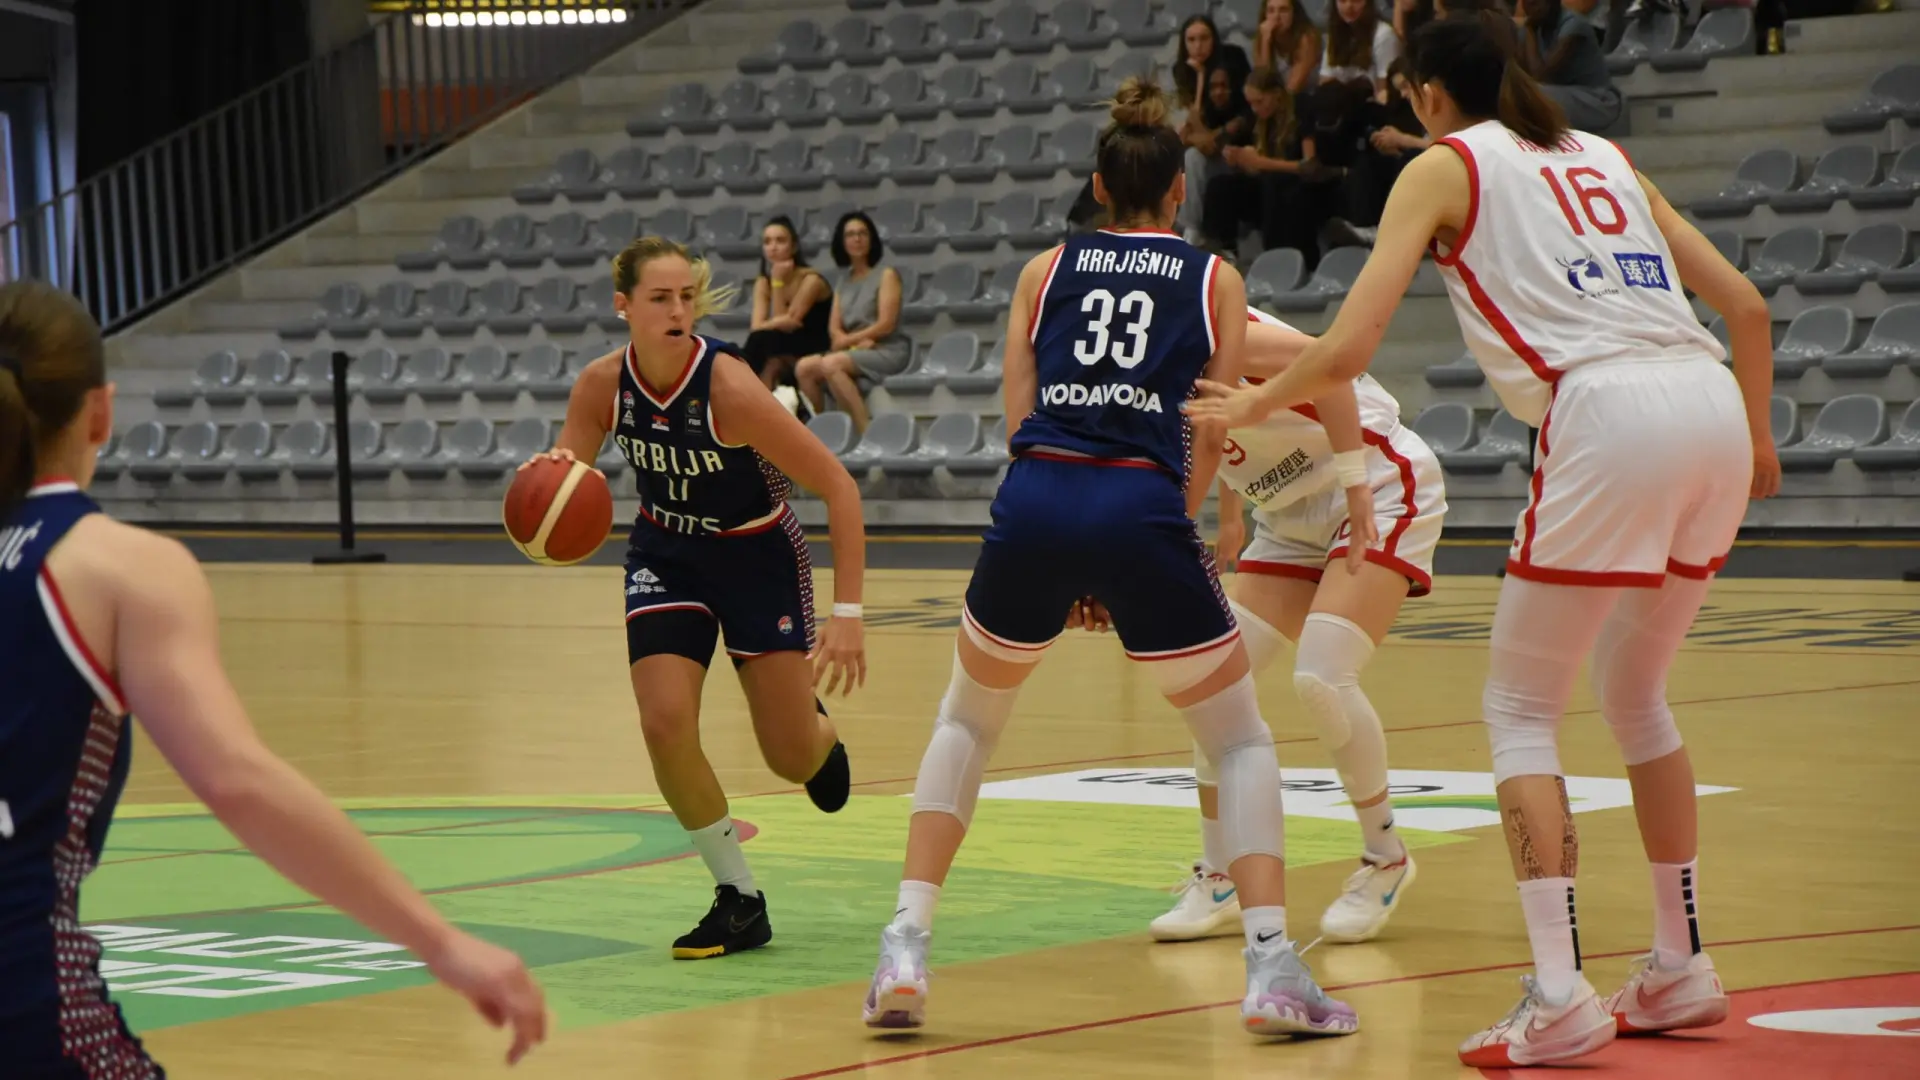 ženska košarkaška reprezentacija srbije, belgije - pripreme, 29 jun 2024 - foto KSS-6680f4d9acdfc.webp